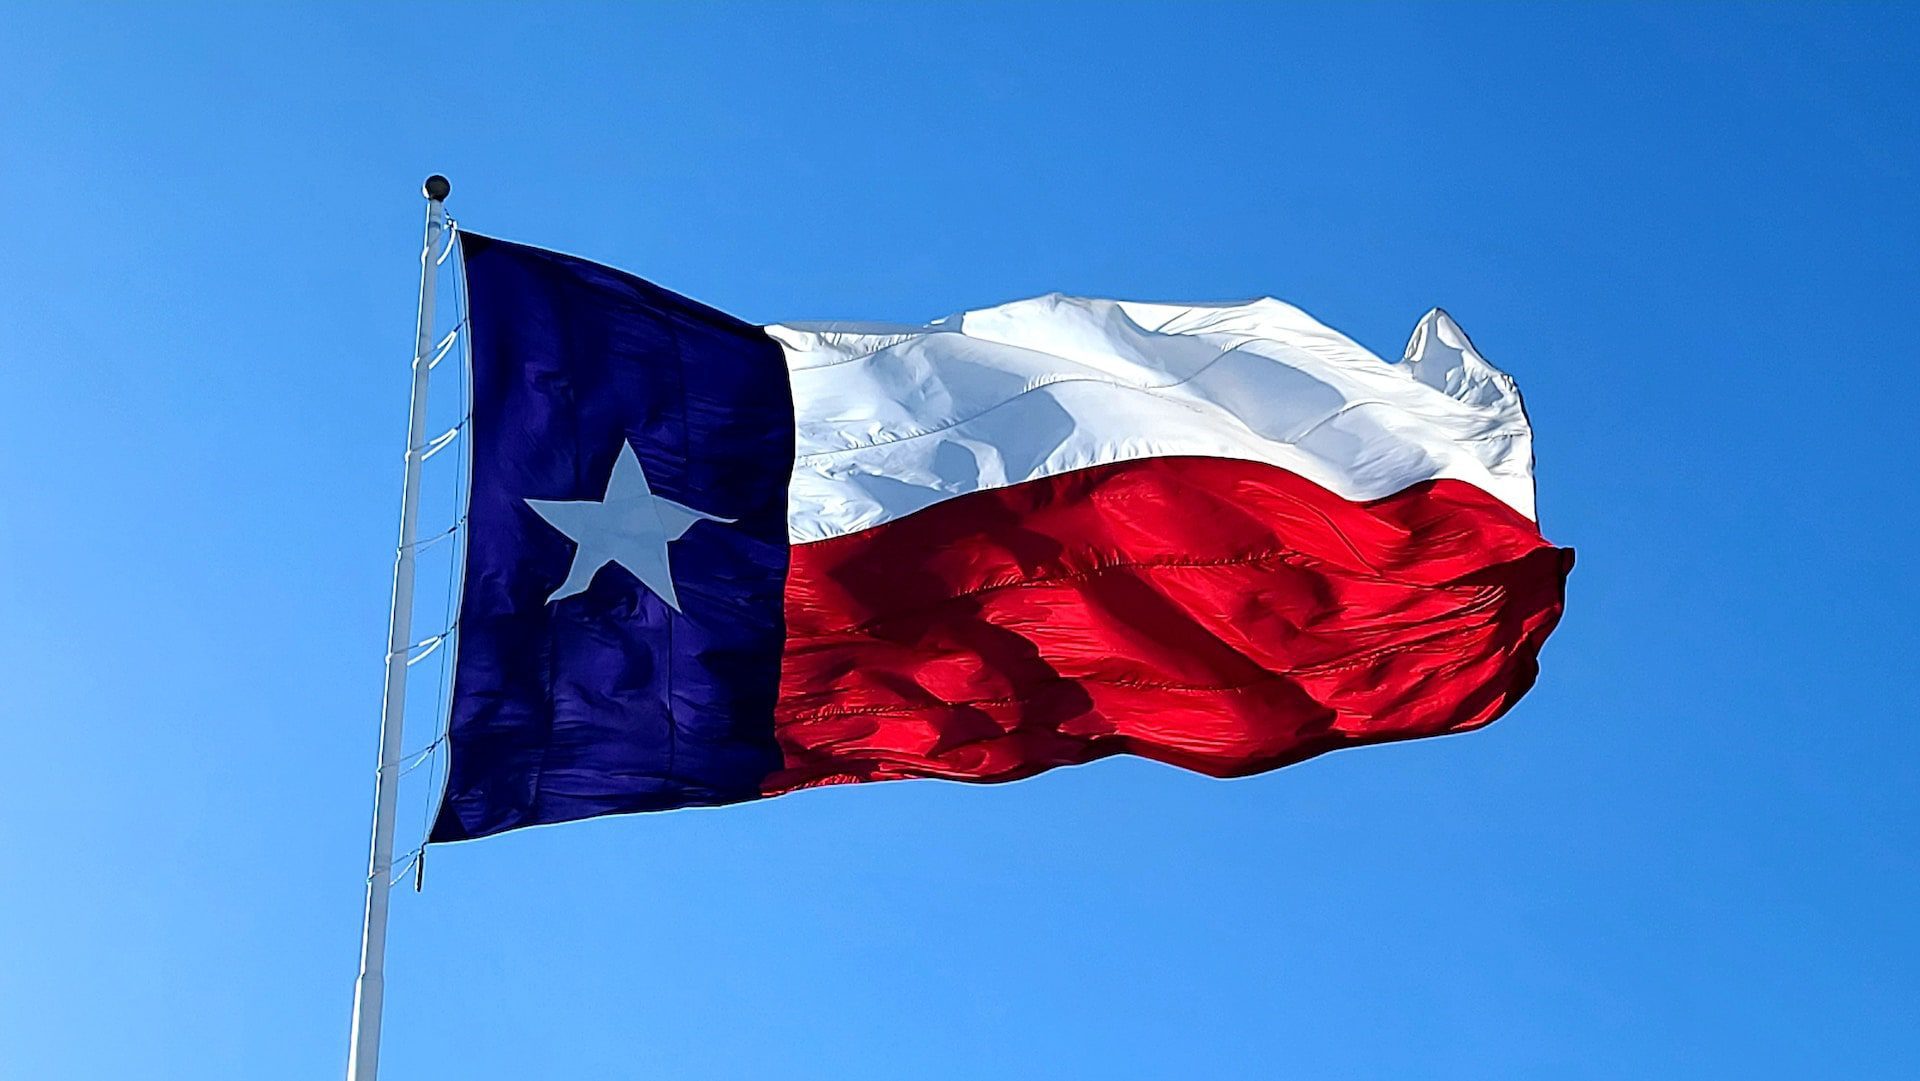 Texas flag flying over Waco, Texas.